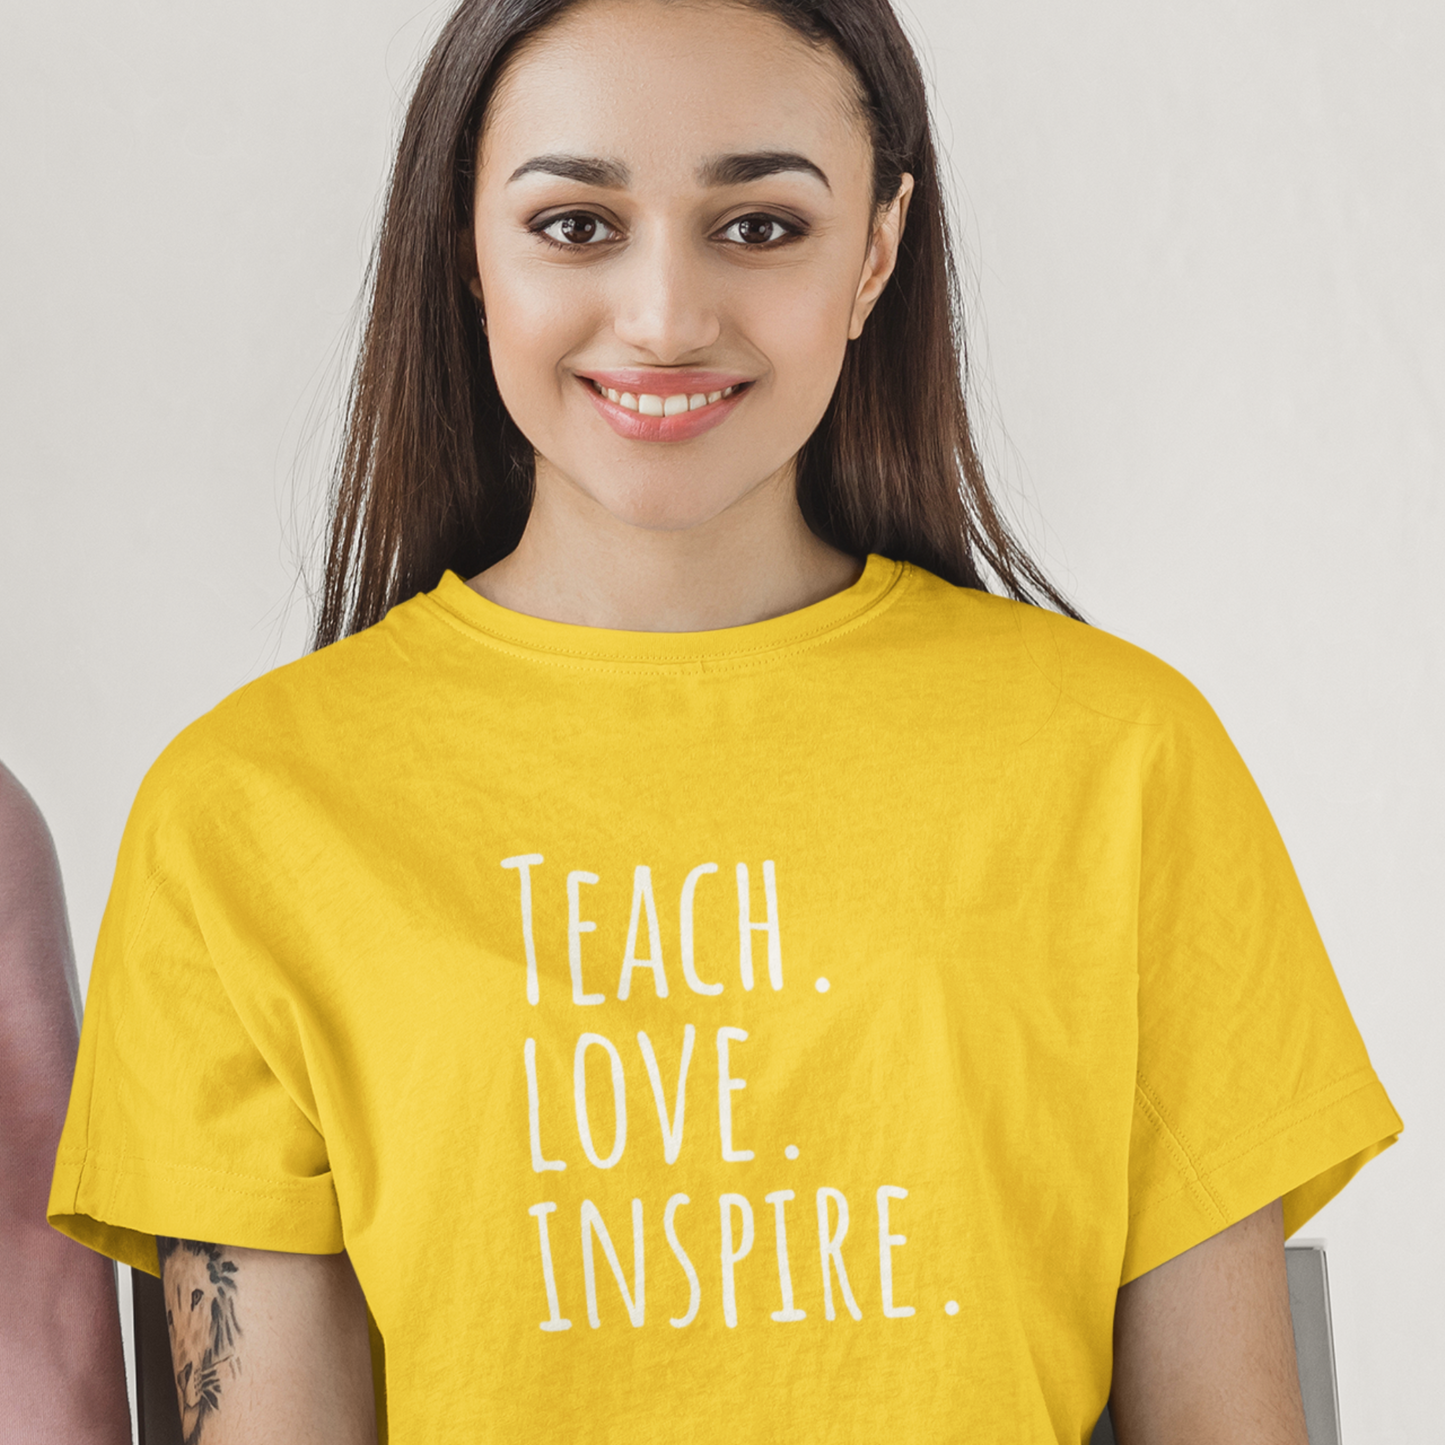 Unisex Softstyle T-Shirt, Teach Love Inspire, Teacher Shirt